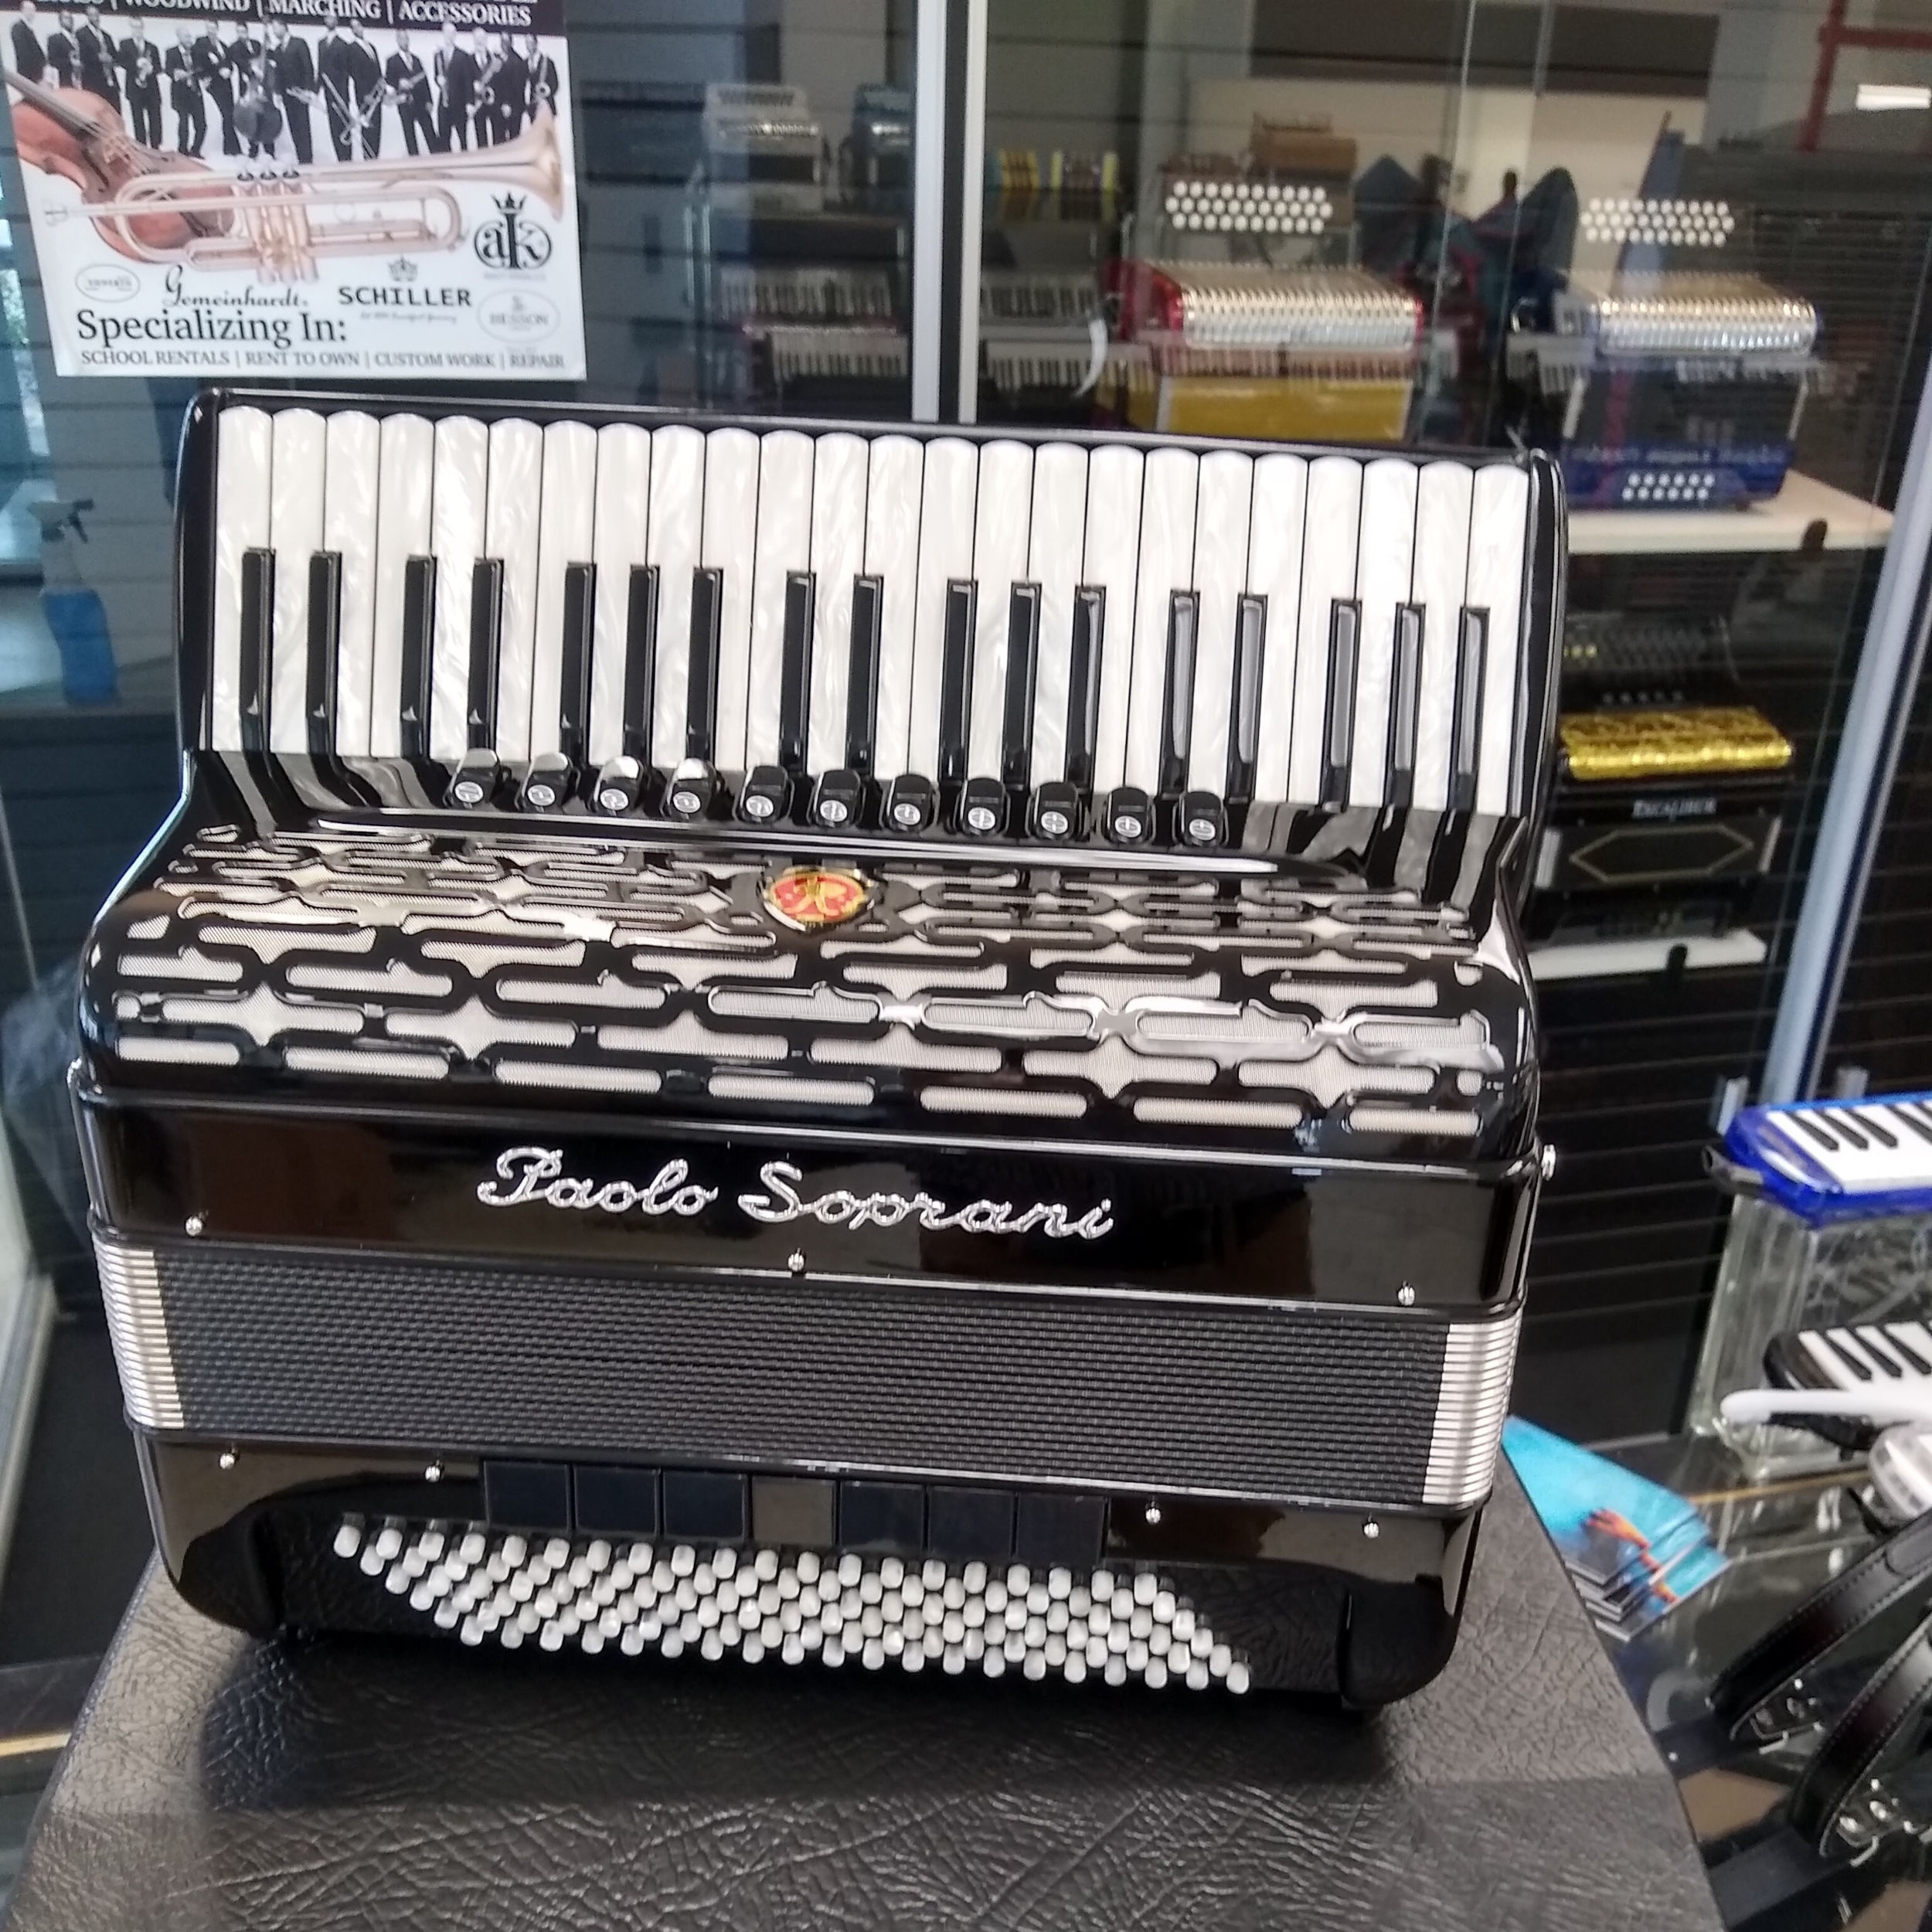 Paolo Soprani Professionale 120 Bass Piano accordion